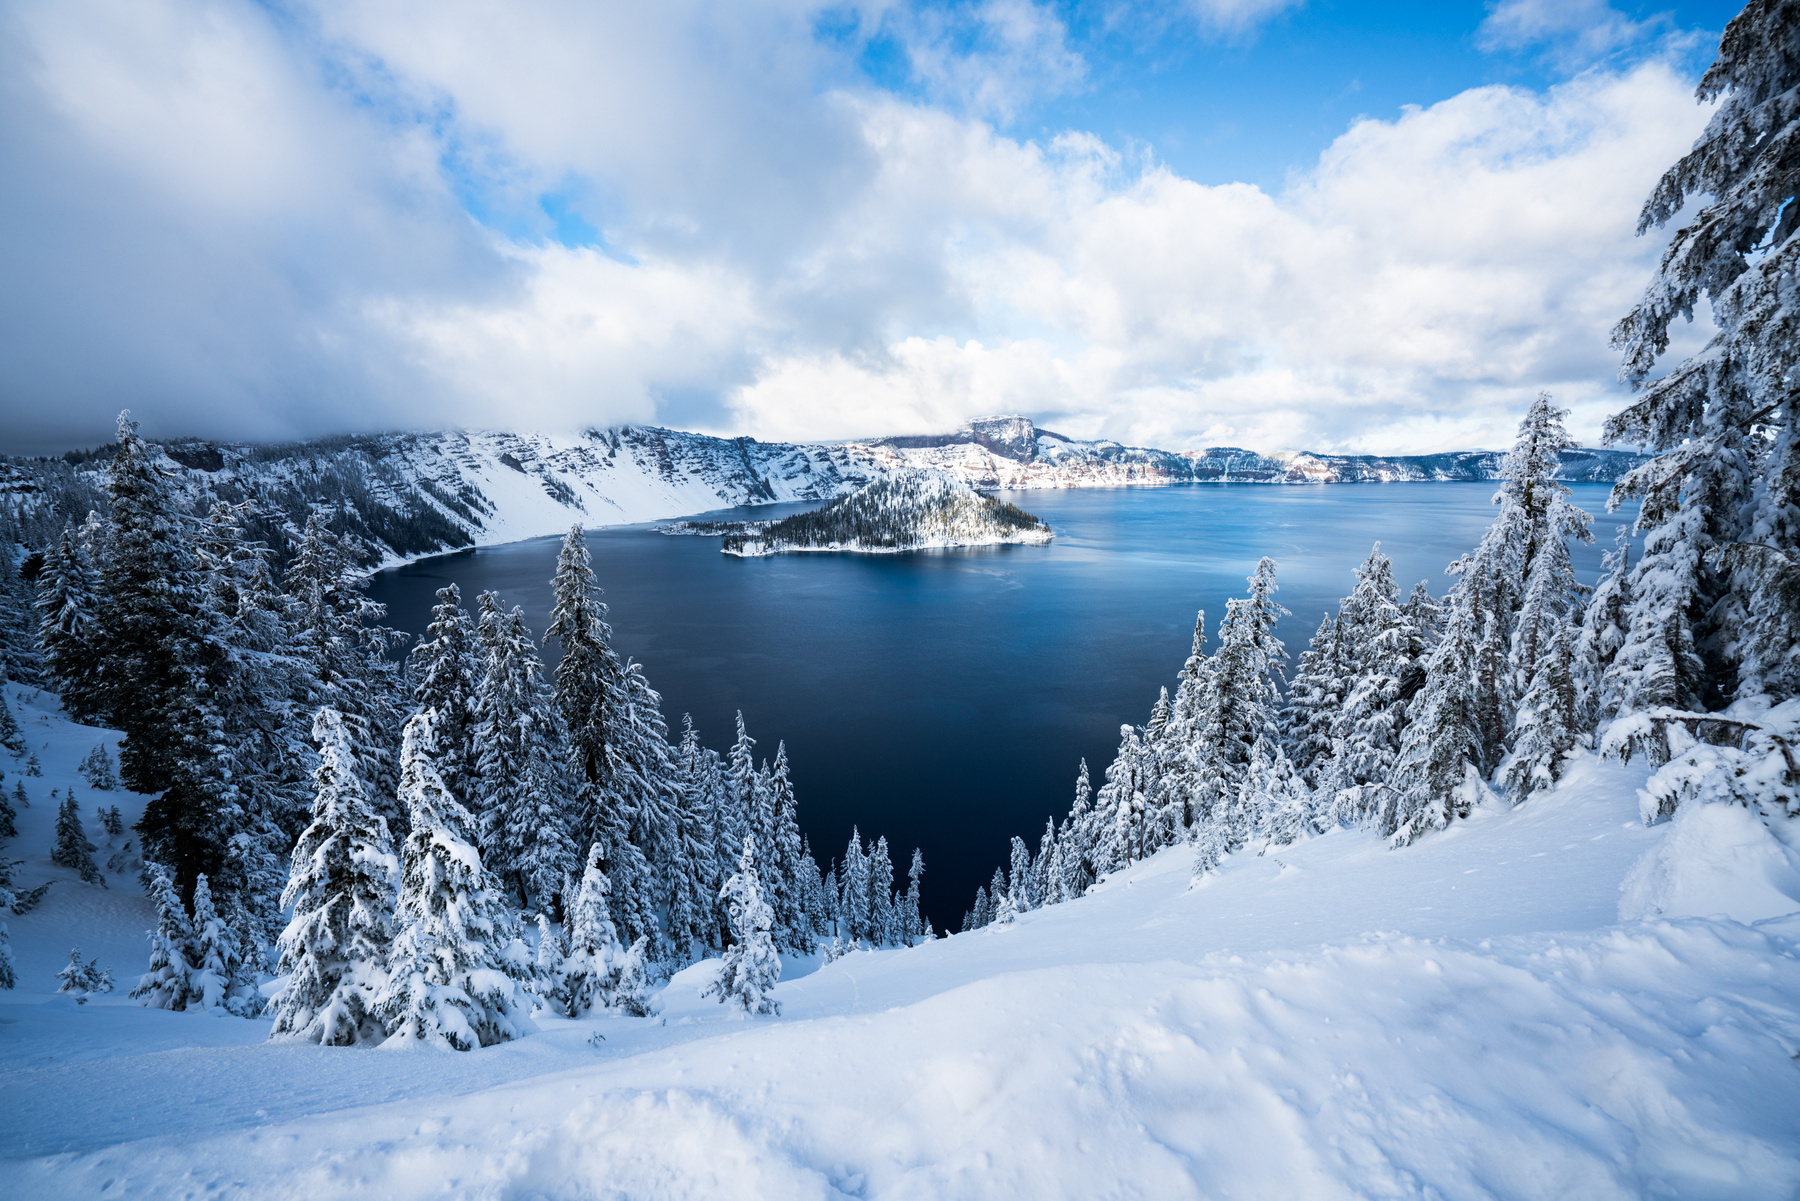 Озеро "Кратер" II, штат Орегон, США озеро зима снег лес деревья сша орегон кратер солнце